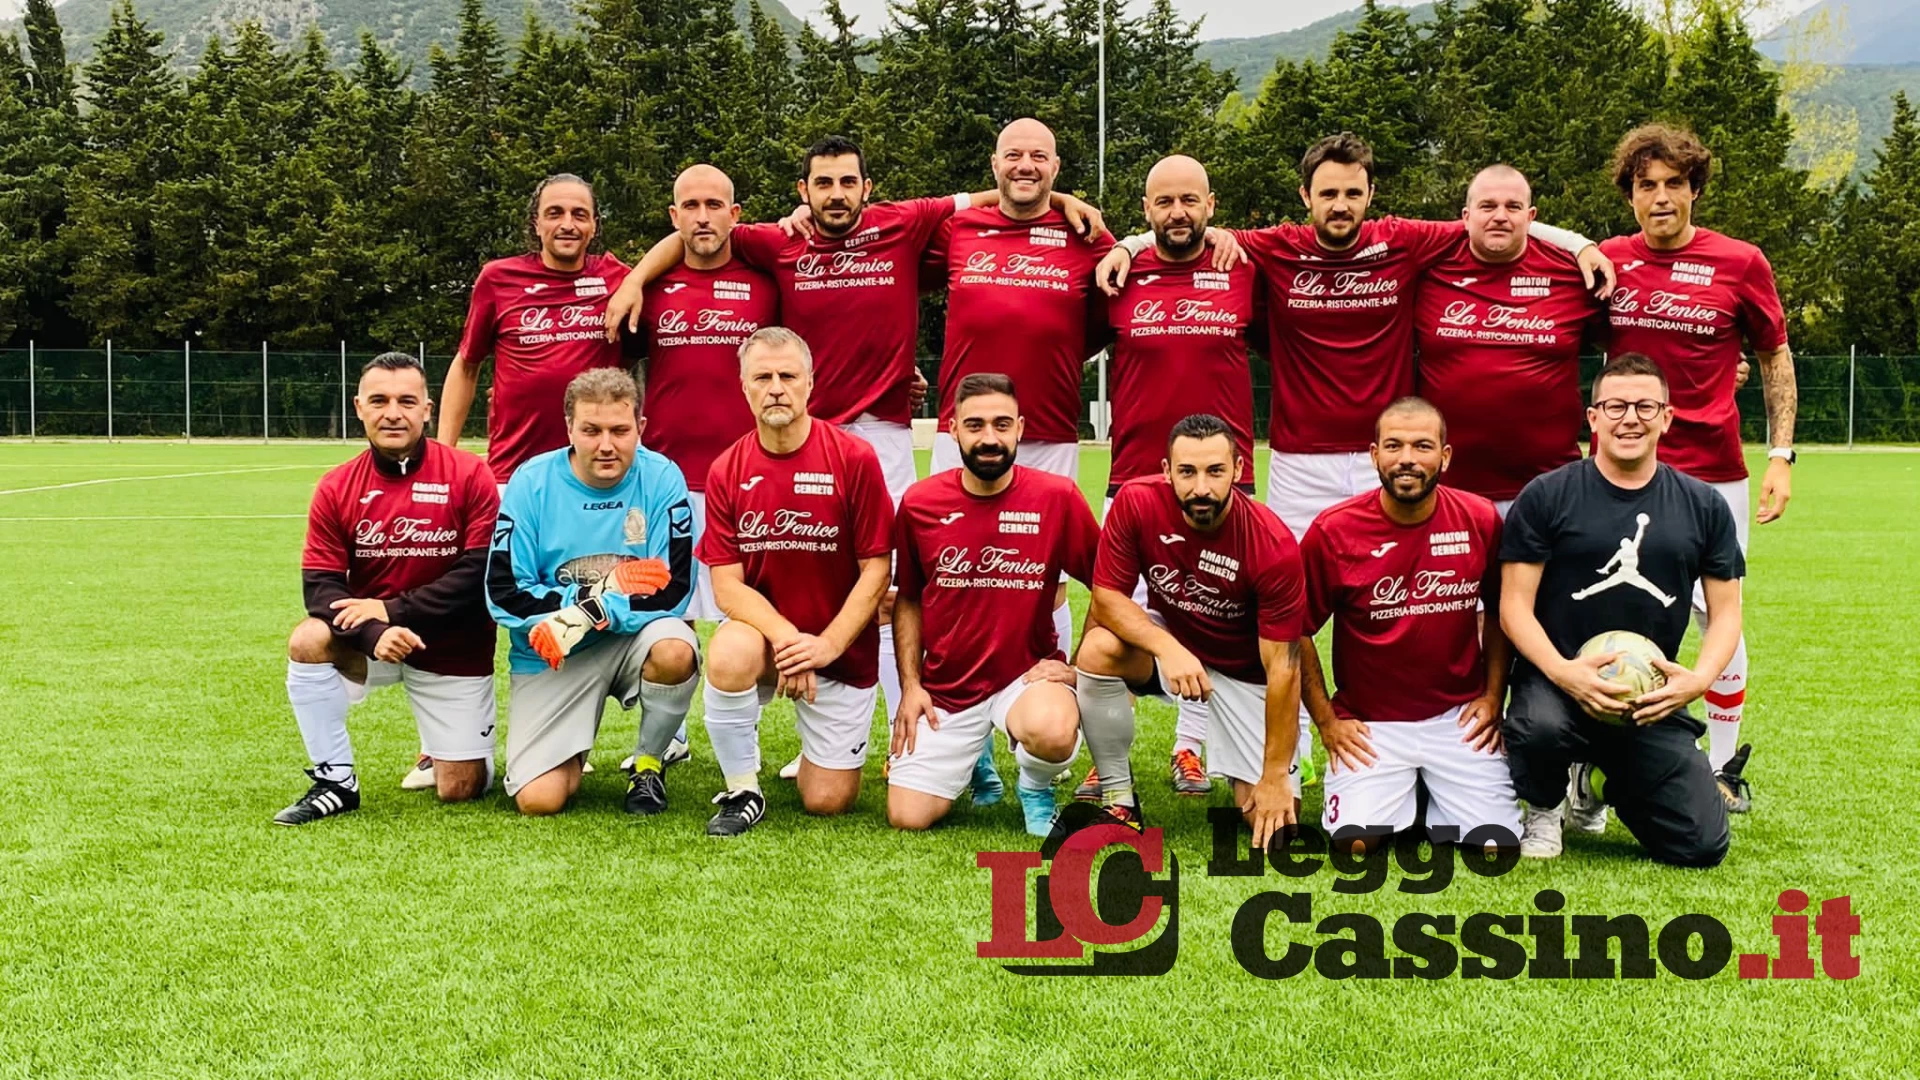 Si è conclusa la quarta giornata del campionato amatori Cassino calcio sport ed eventi !